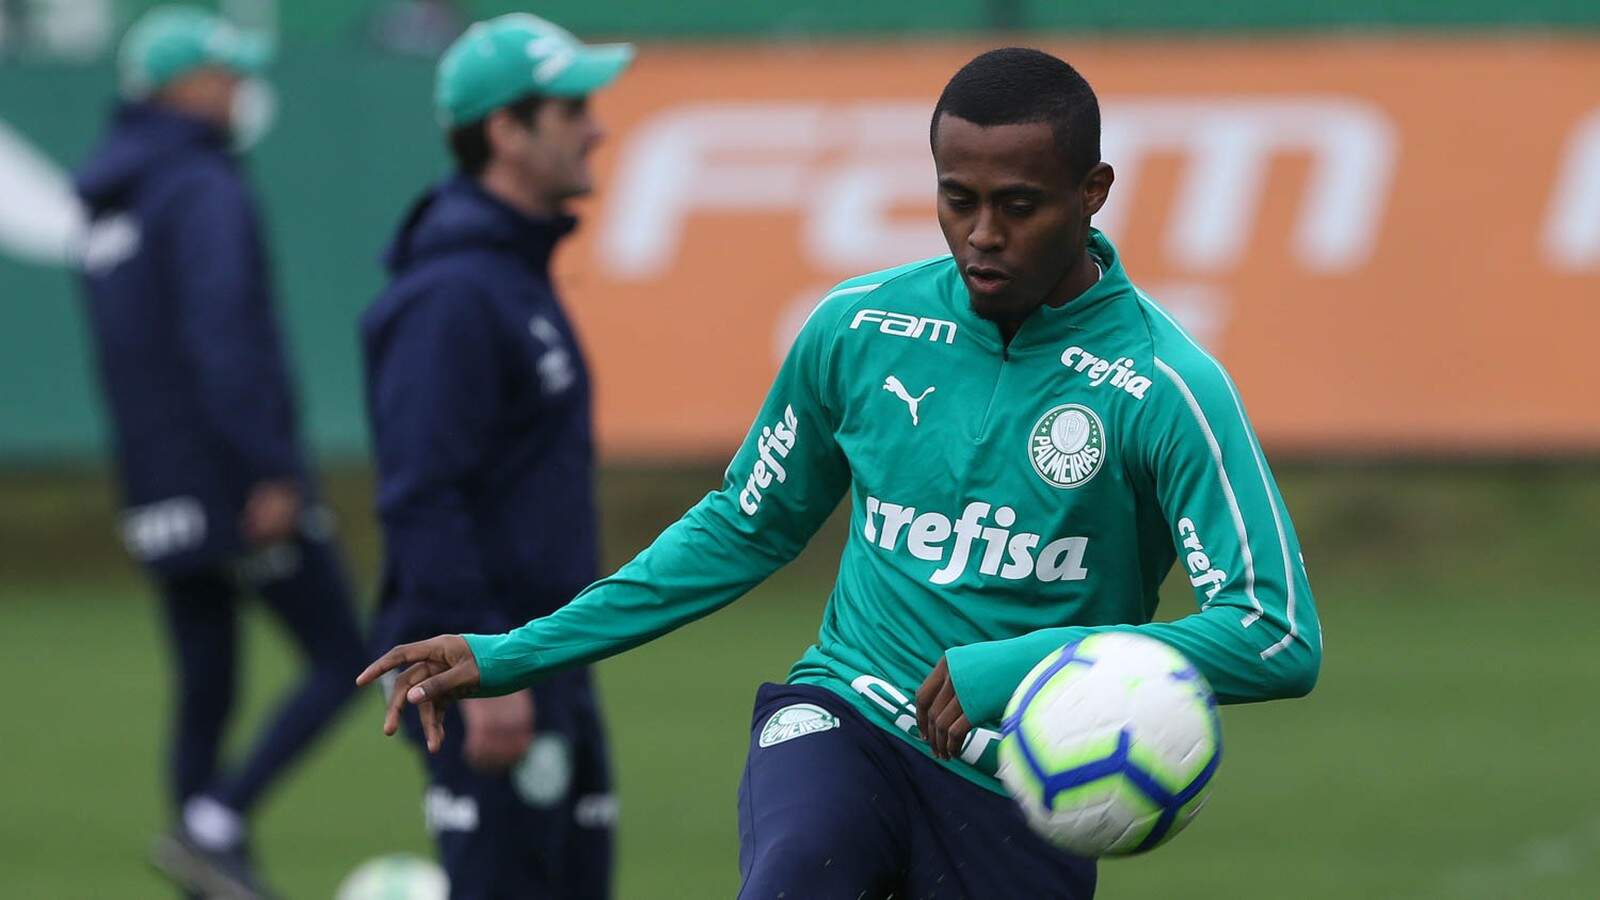 Atacante tem 23 anos e atuou pelo Palmeiras em 20 ocasiões, com um gol marcado